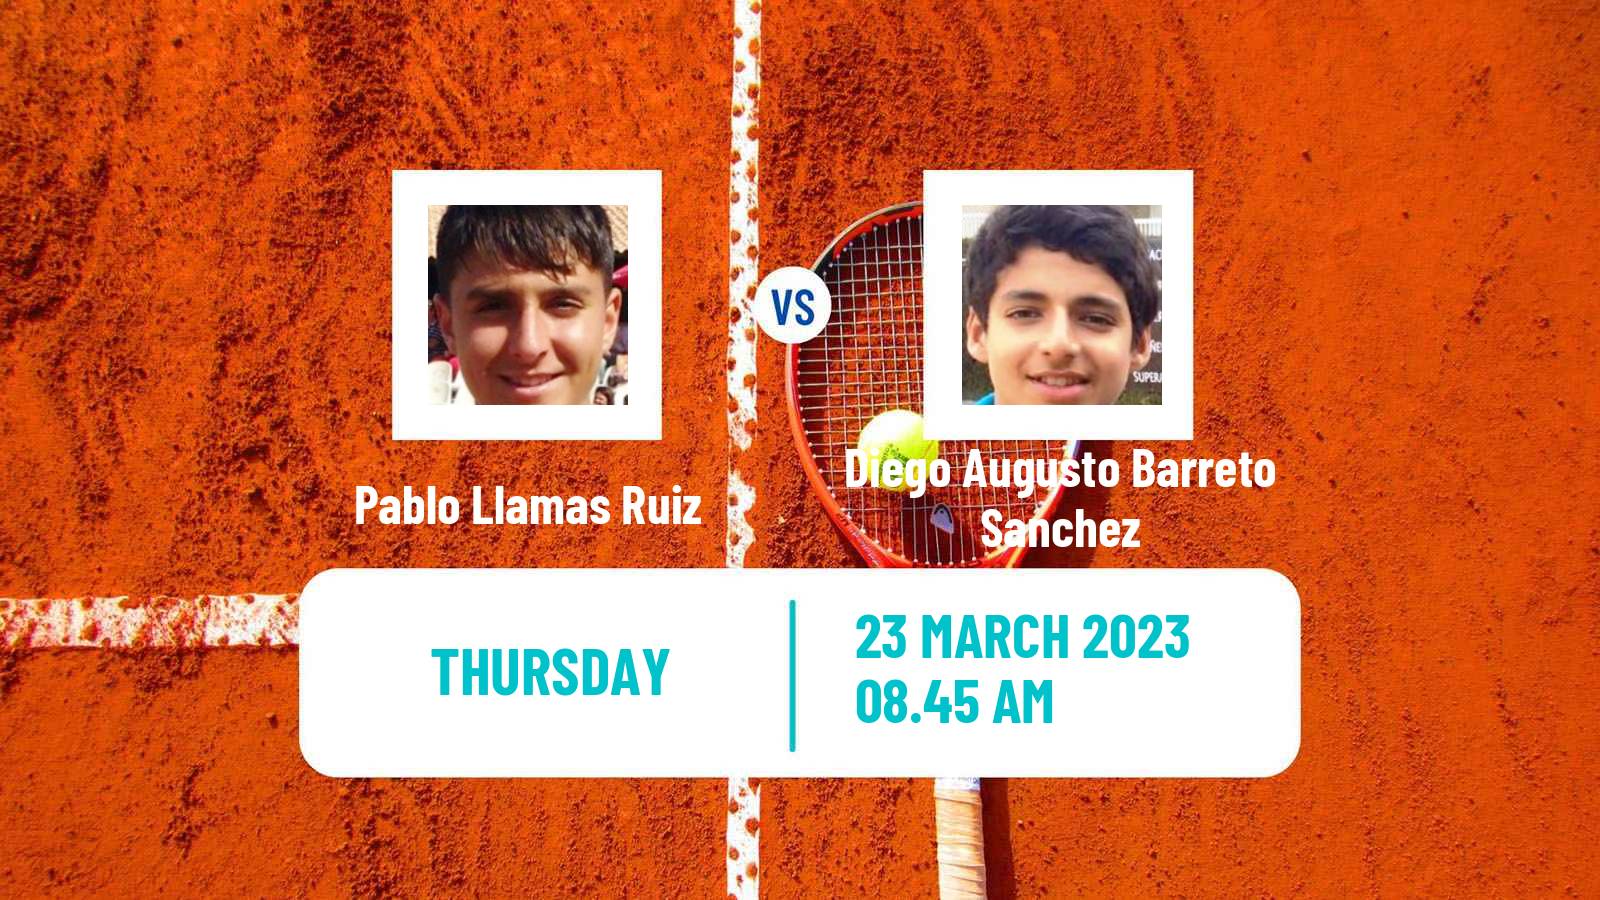 Tennis ITF Tournaments Pablo Llamas Ruiz - Diego Augusto Barreto Sanchez